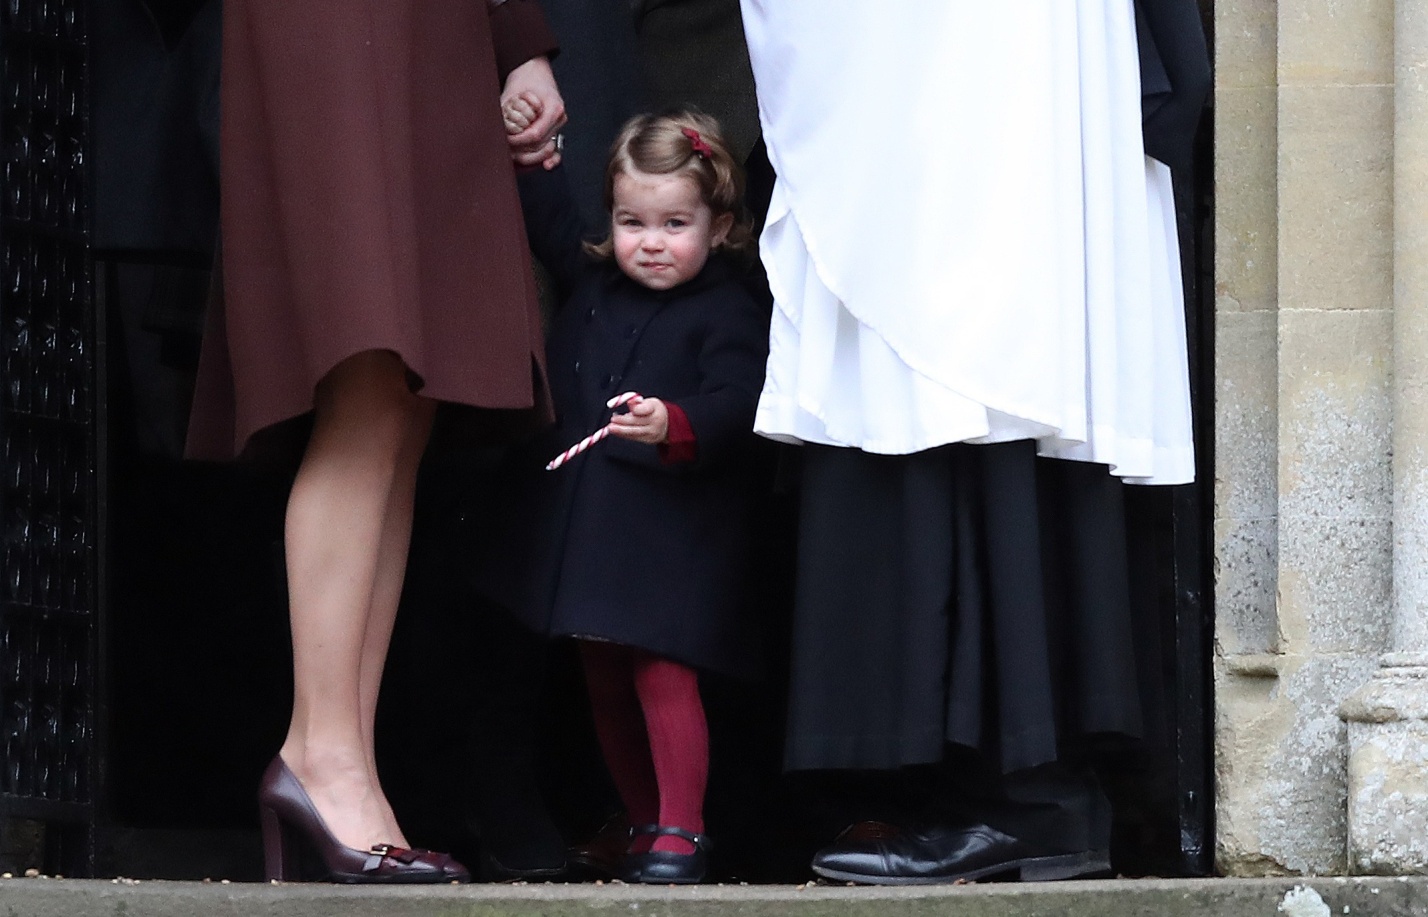 Стиль принцессы: как Кейт Миддлтон одевает дочь - 10 образов